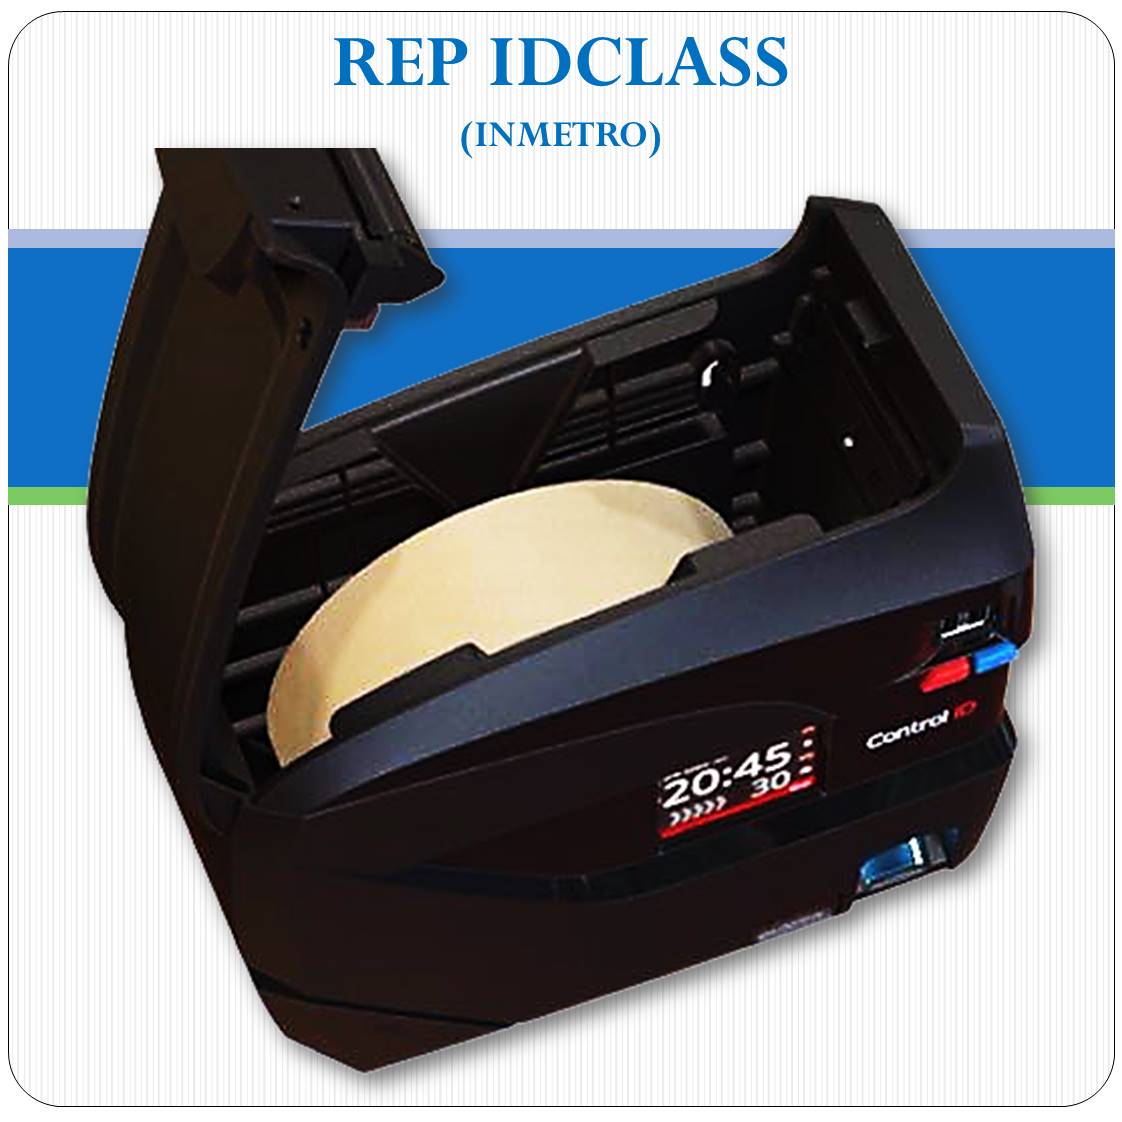 REP iDClass BIO PROX - Biometria, RFID e Senha - Inmetro